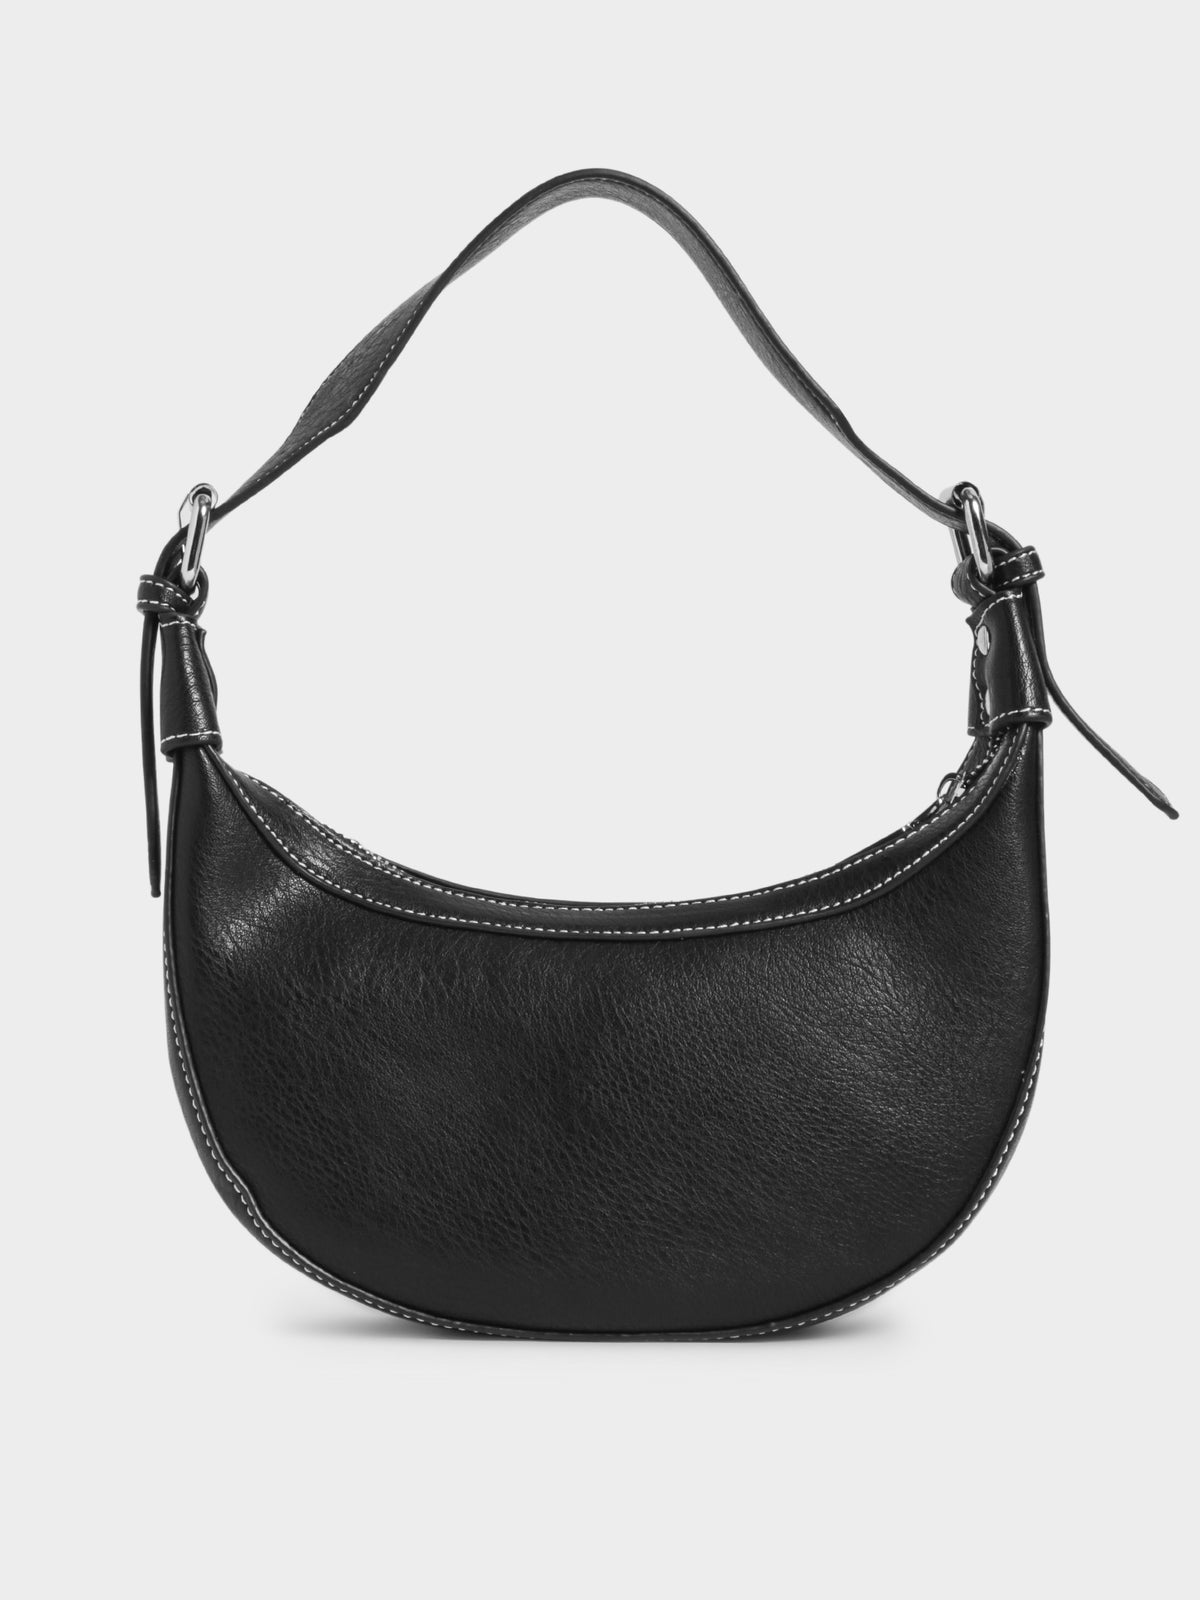 Kaley Hobo Handbag in Black